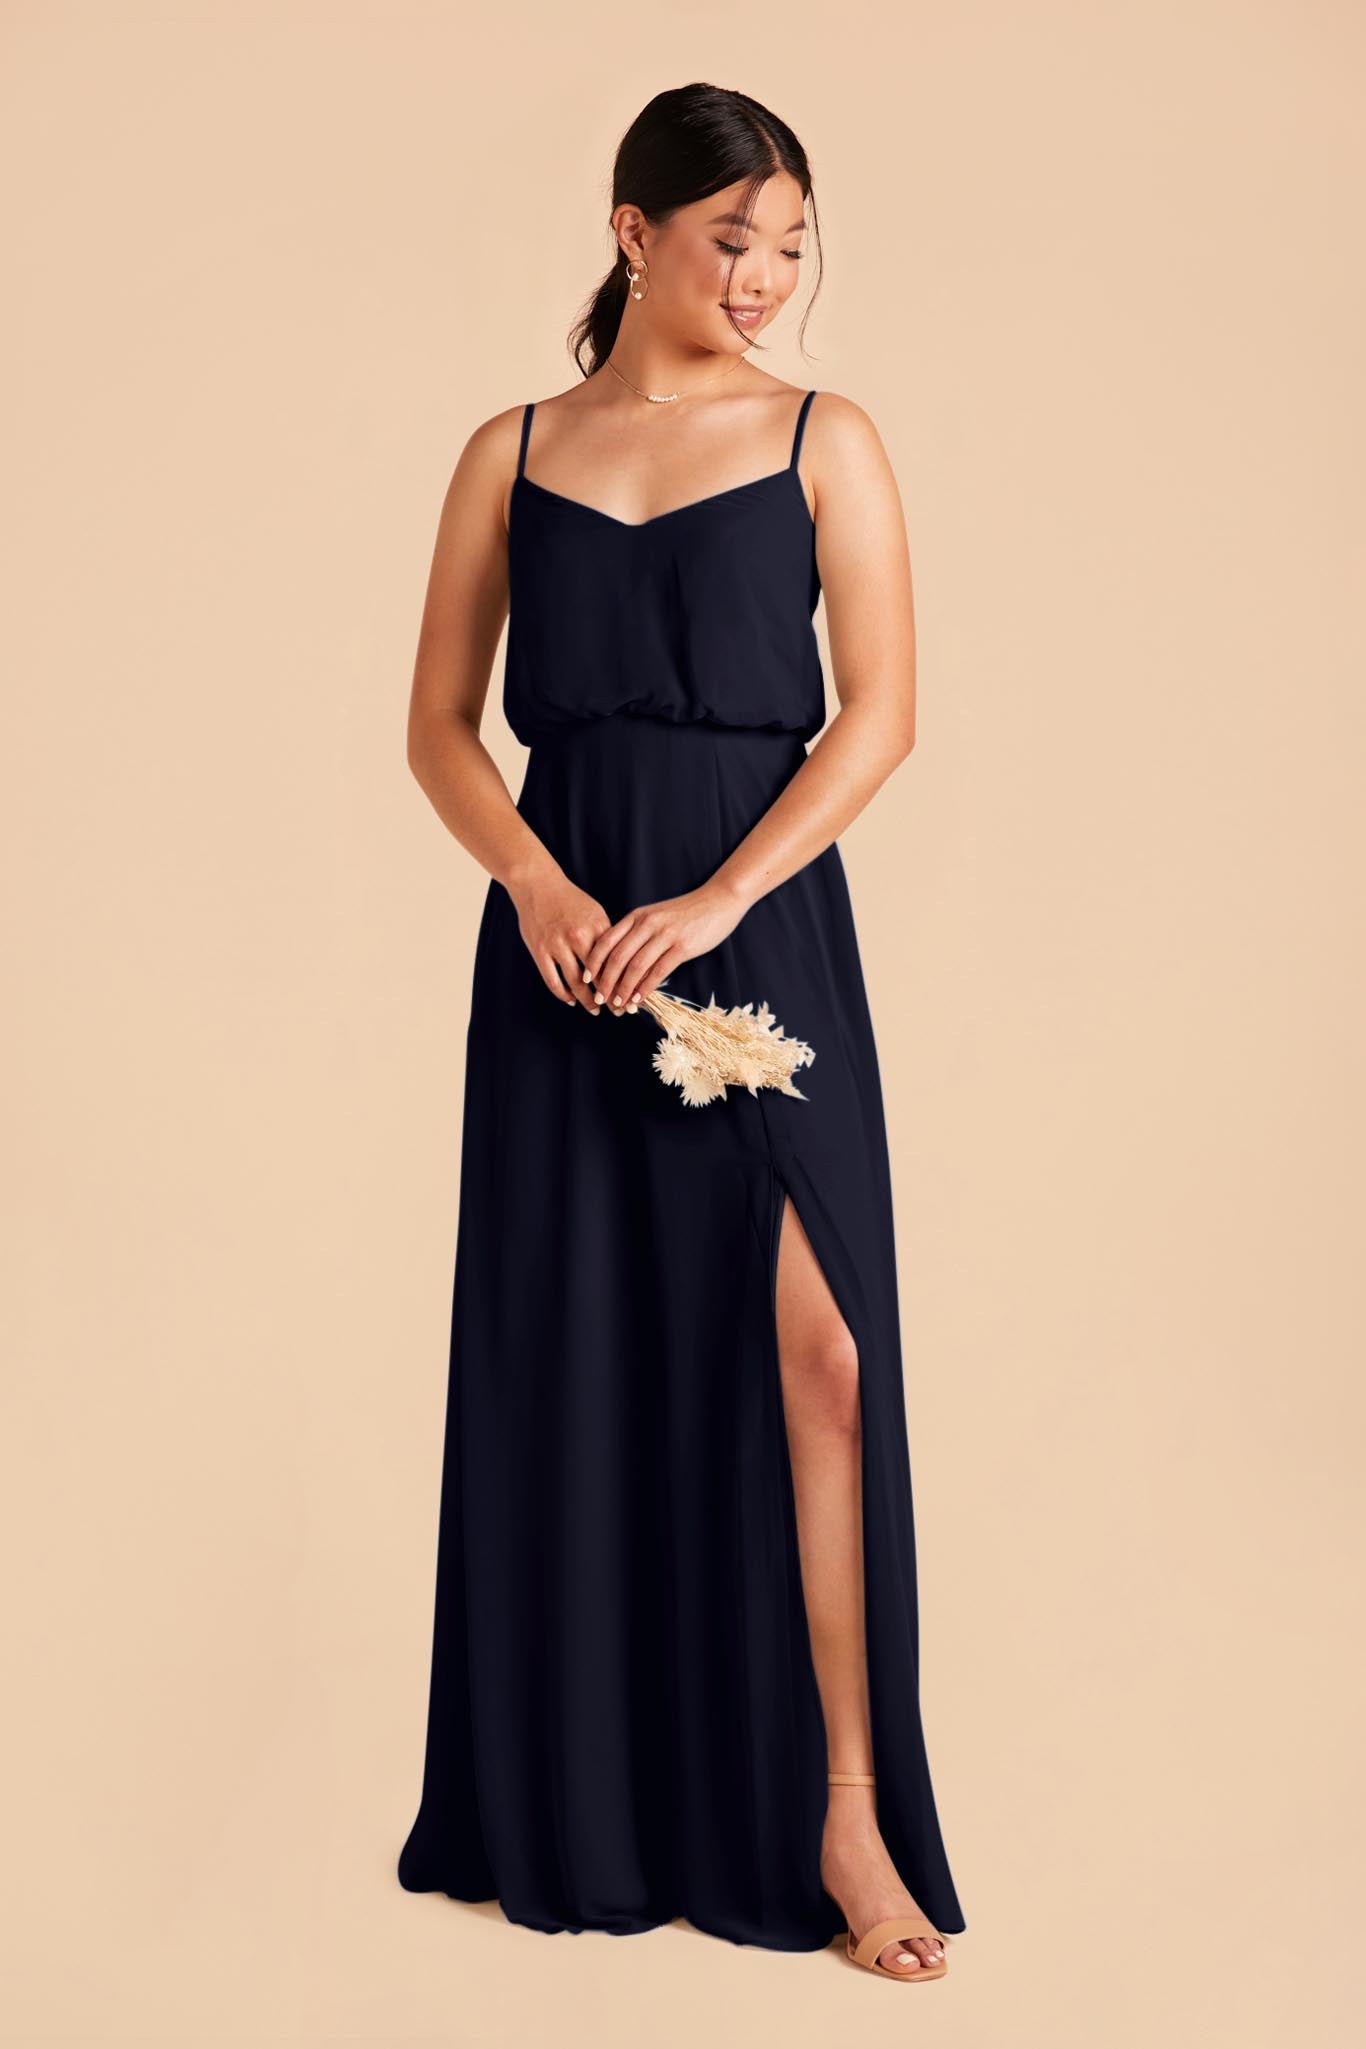 Gwennie bridesmaid dress in navy blue chiffon by Birdy Grey, back view